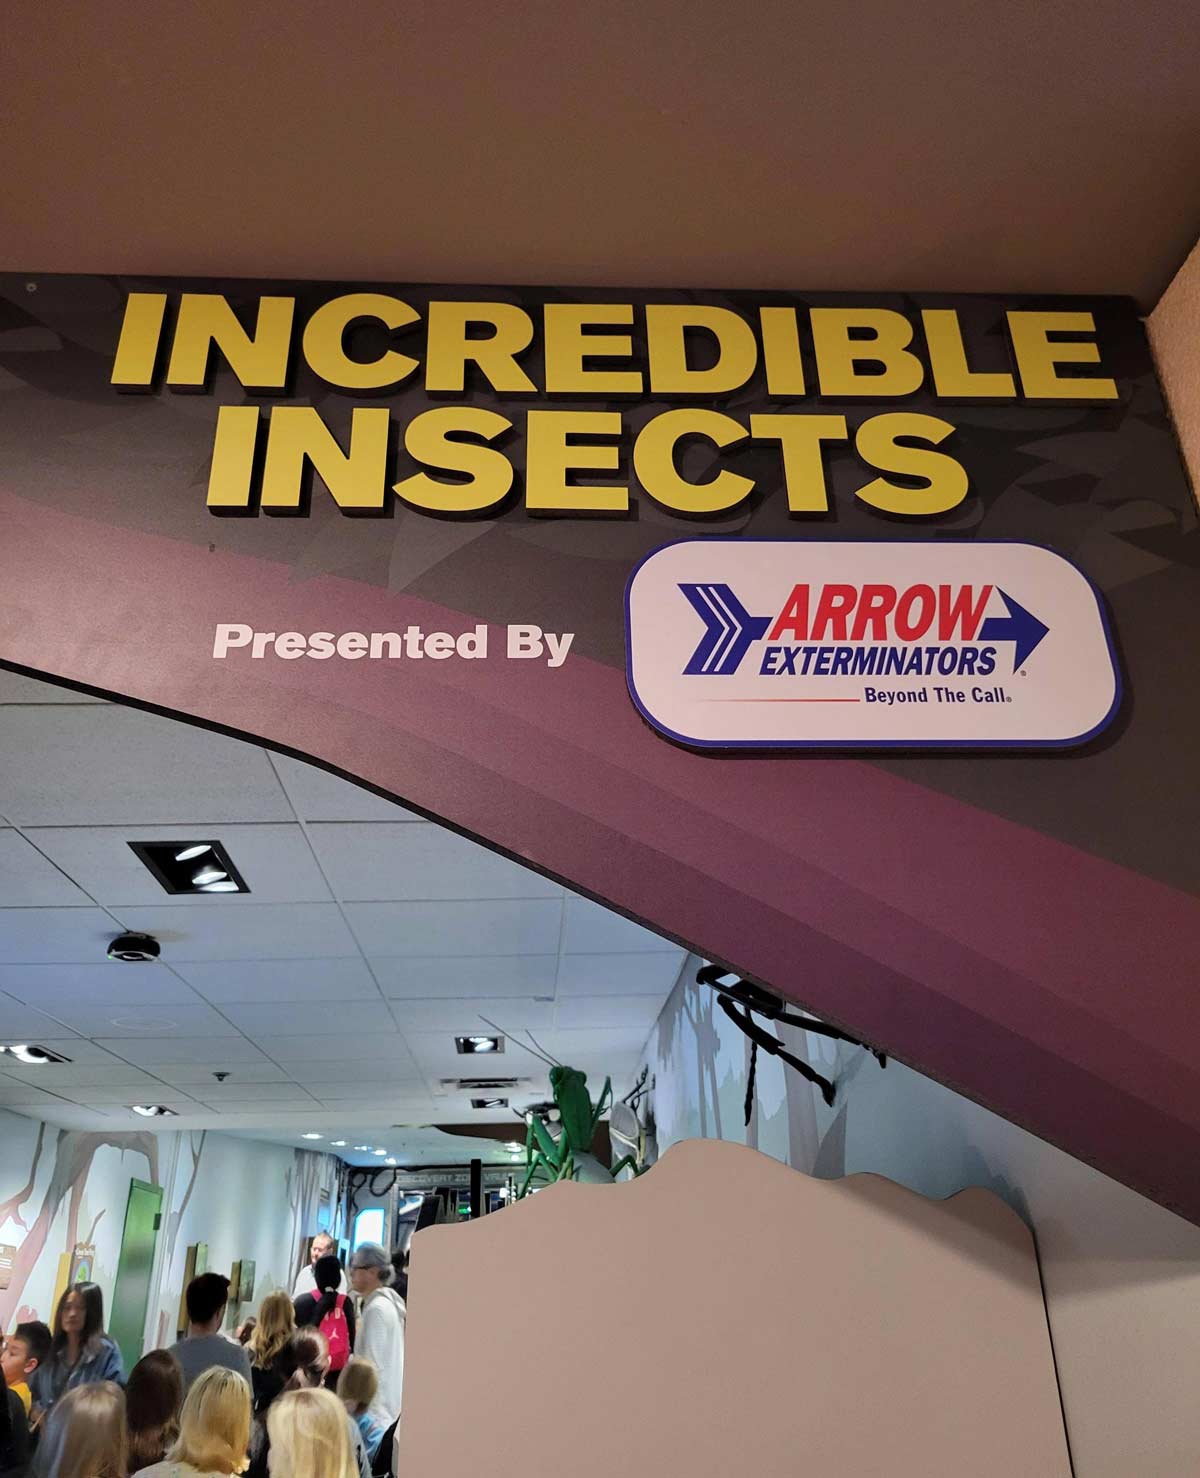 Exterminators sponsoring the Georgia Aquarium insects exhibit